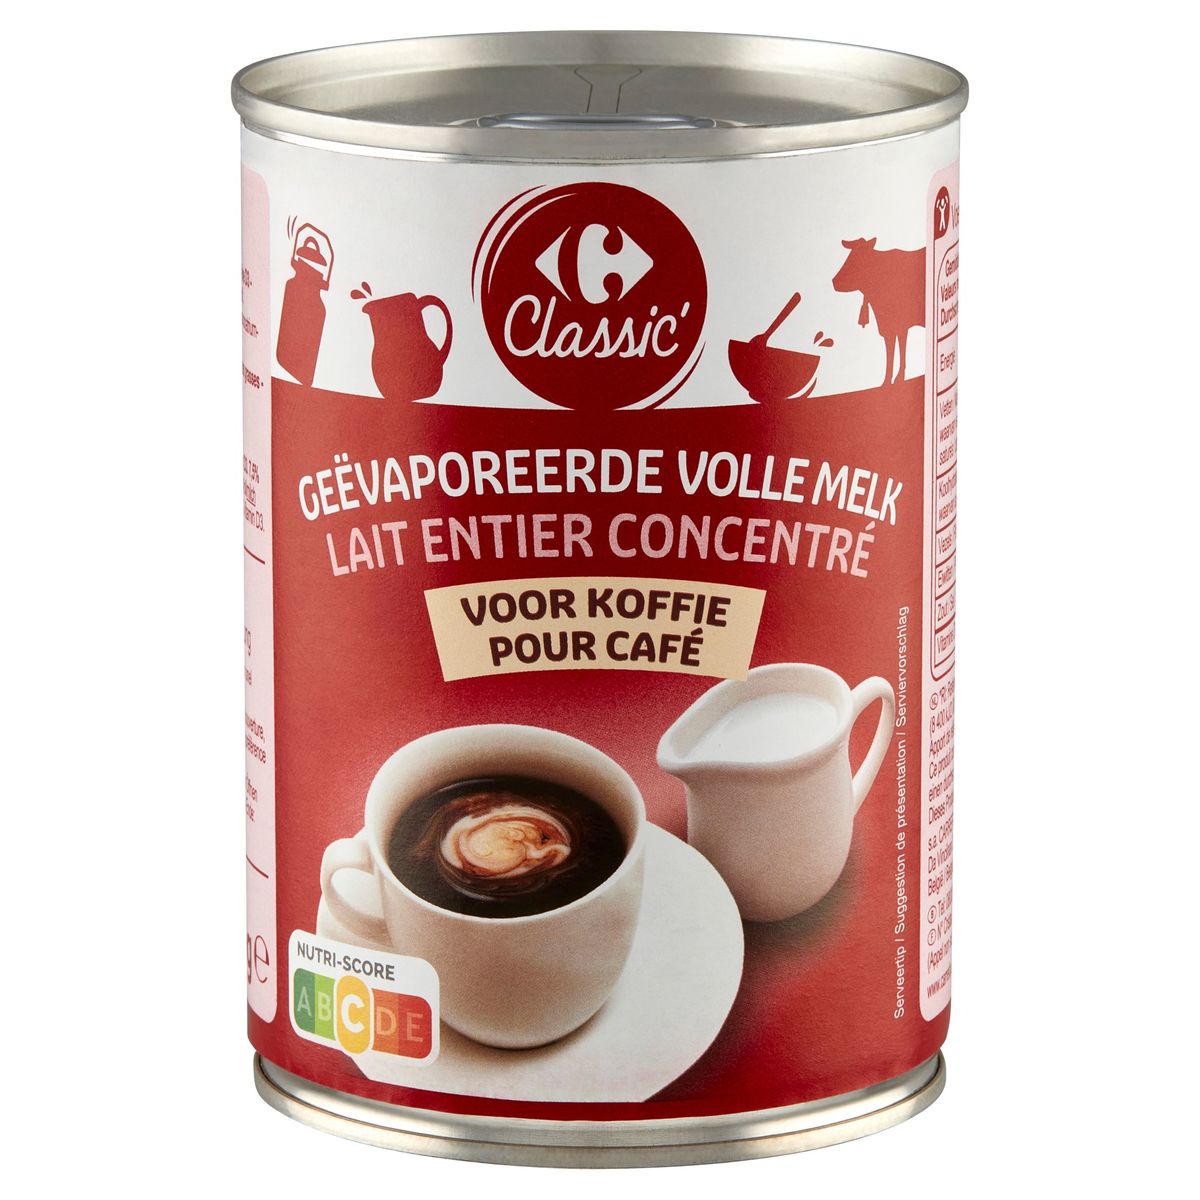 Carrefour Classic' Geëvaporeerde Volle Melk voor Koffie 410 g